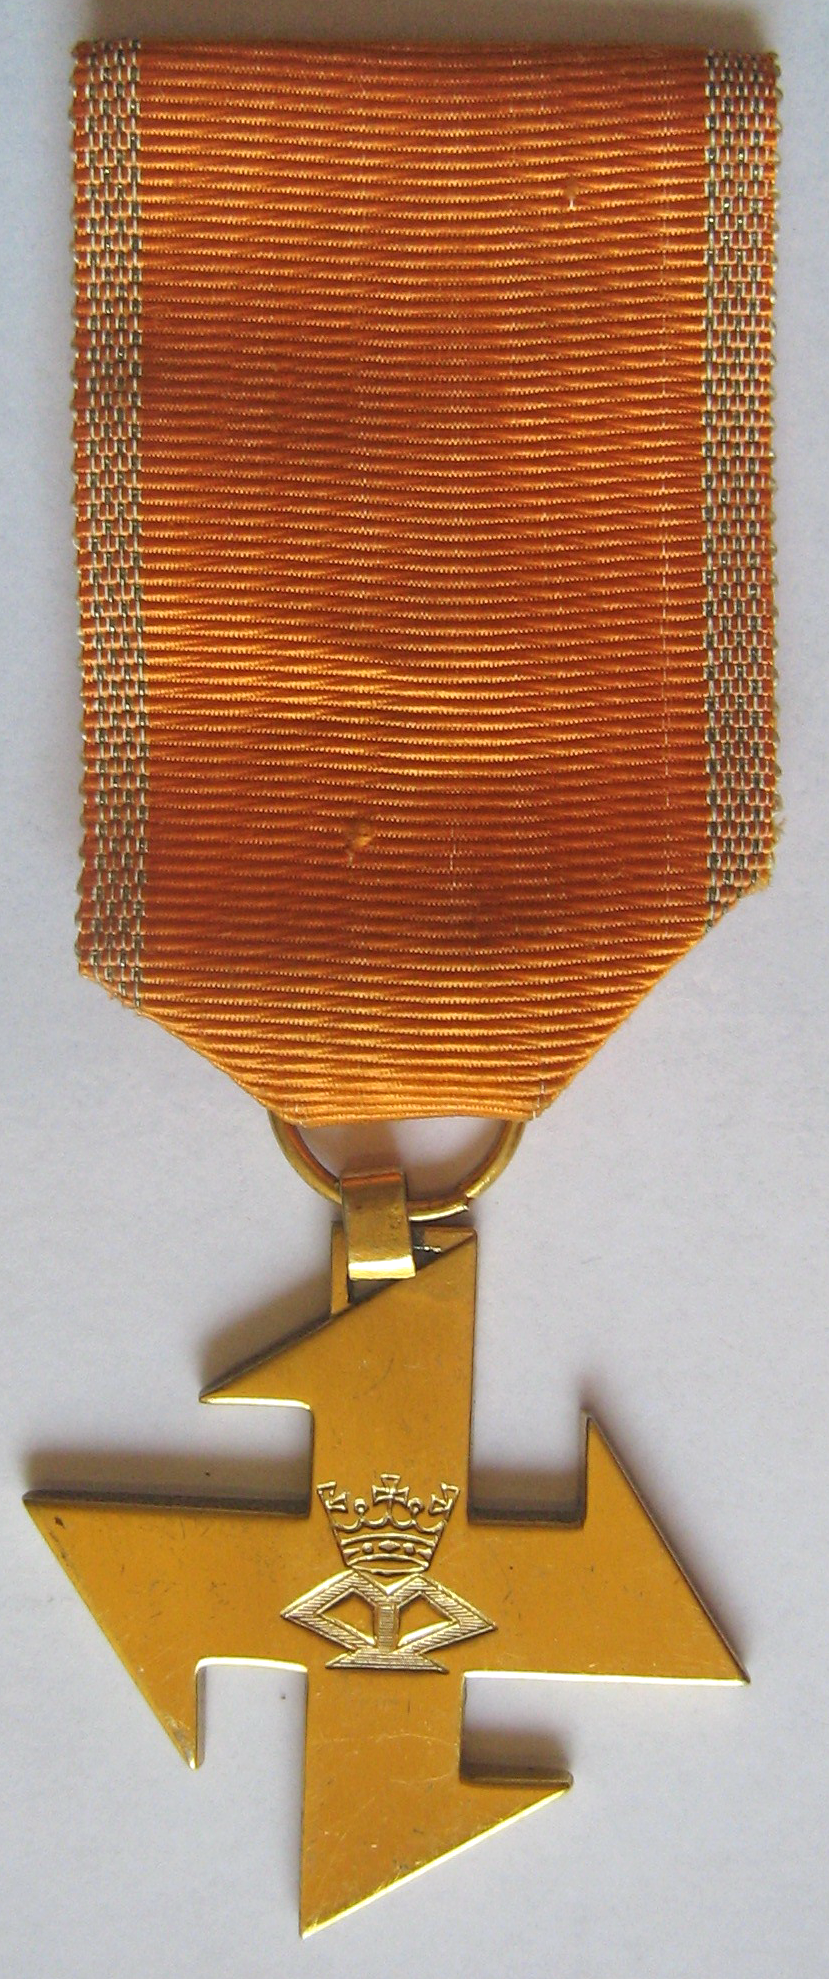 Крест Королевы Марии 2-я степени с «военной» лентой.